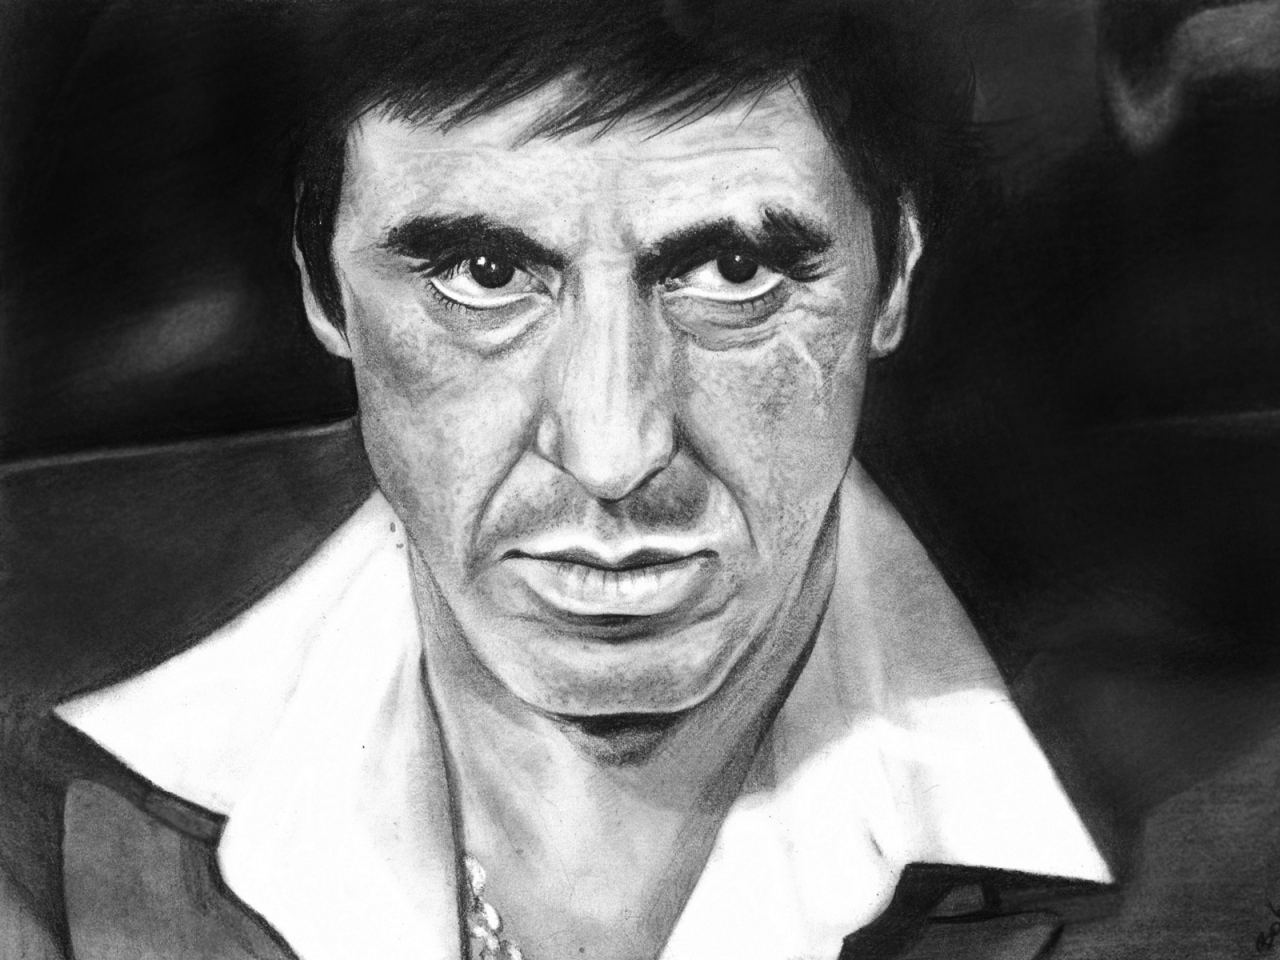 Al Pacino Scarface Fan Art for 1280 x 960 resolution